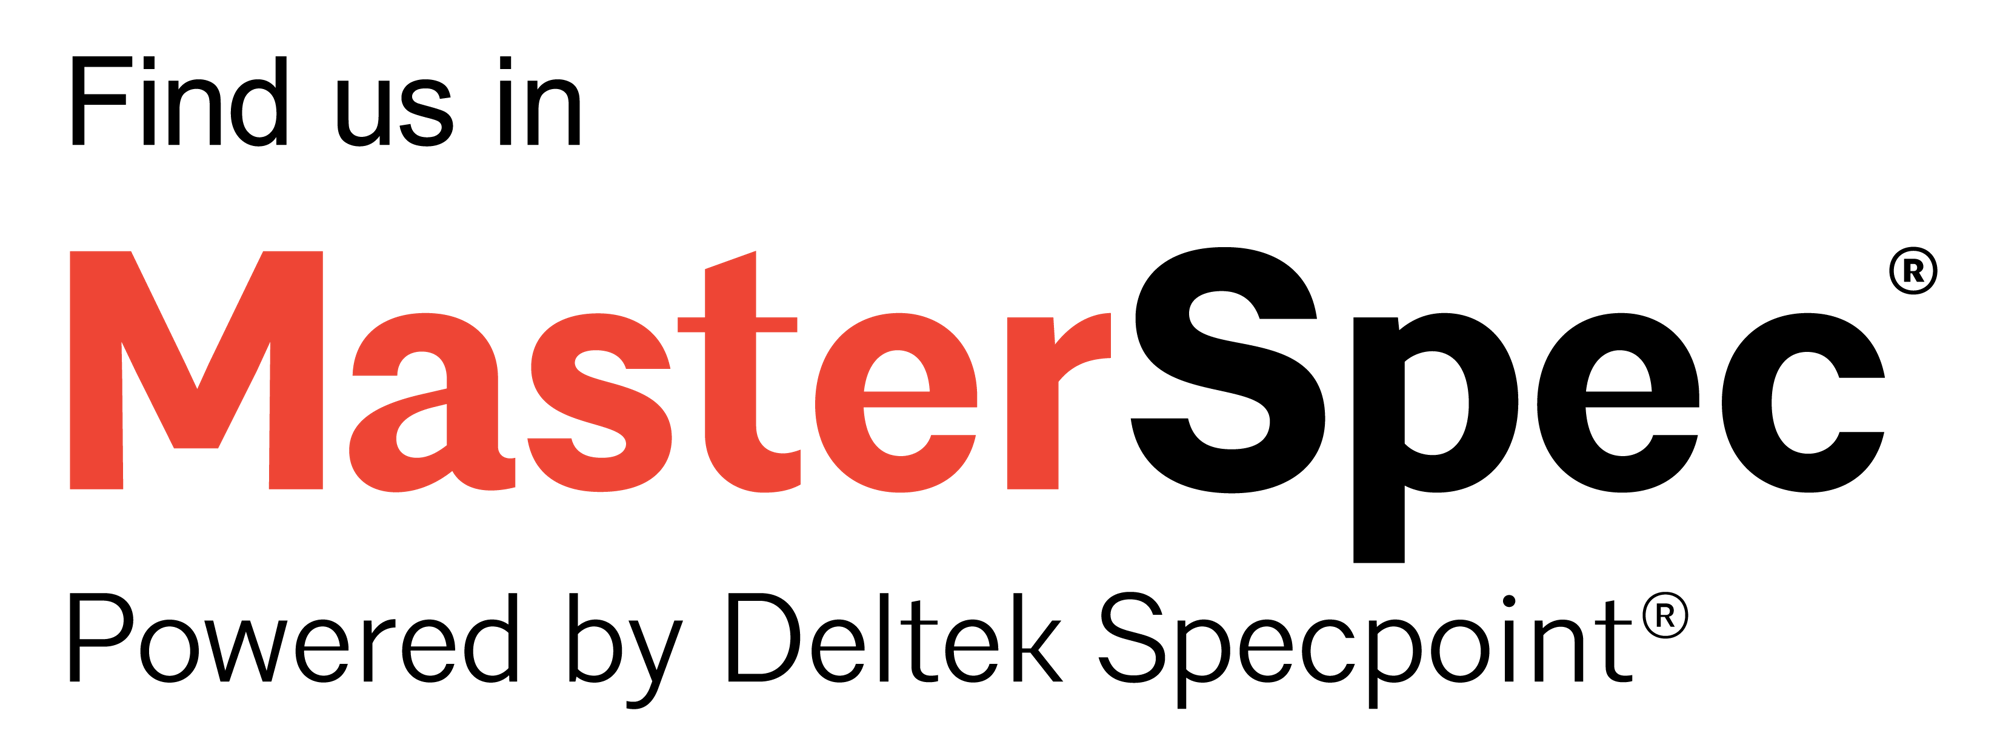 AIA_FindUsIn-MasterSpec-Deltek-Specpoint_2c_full_rgb